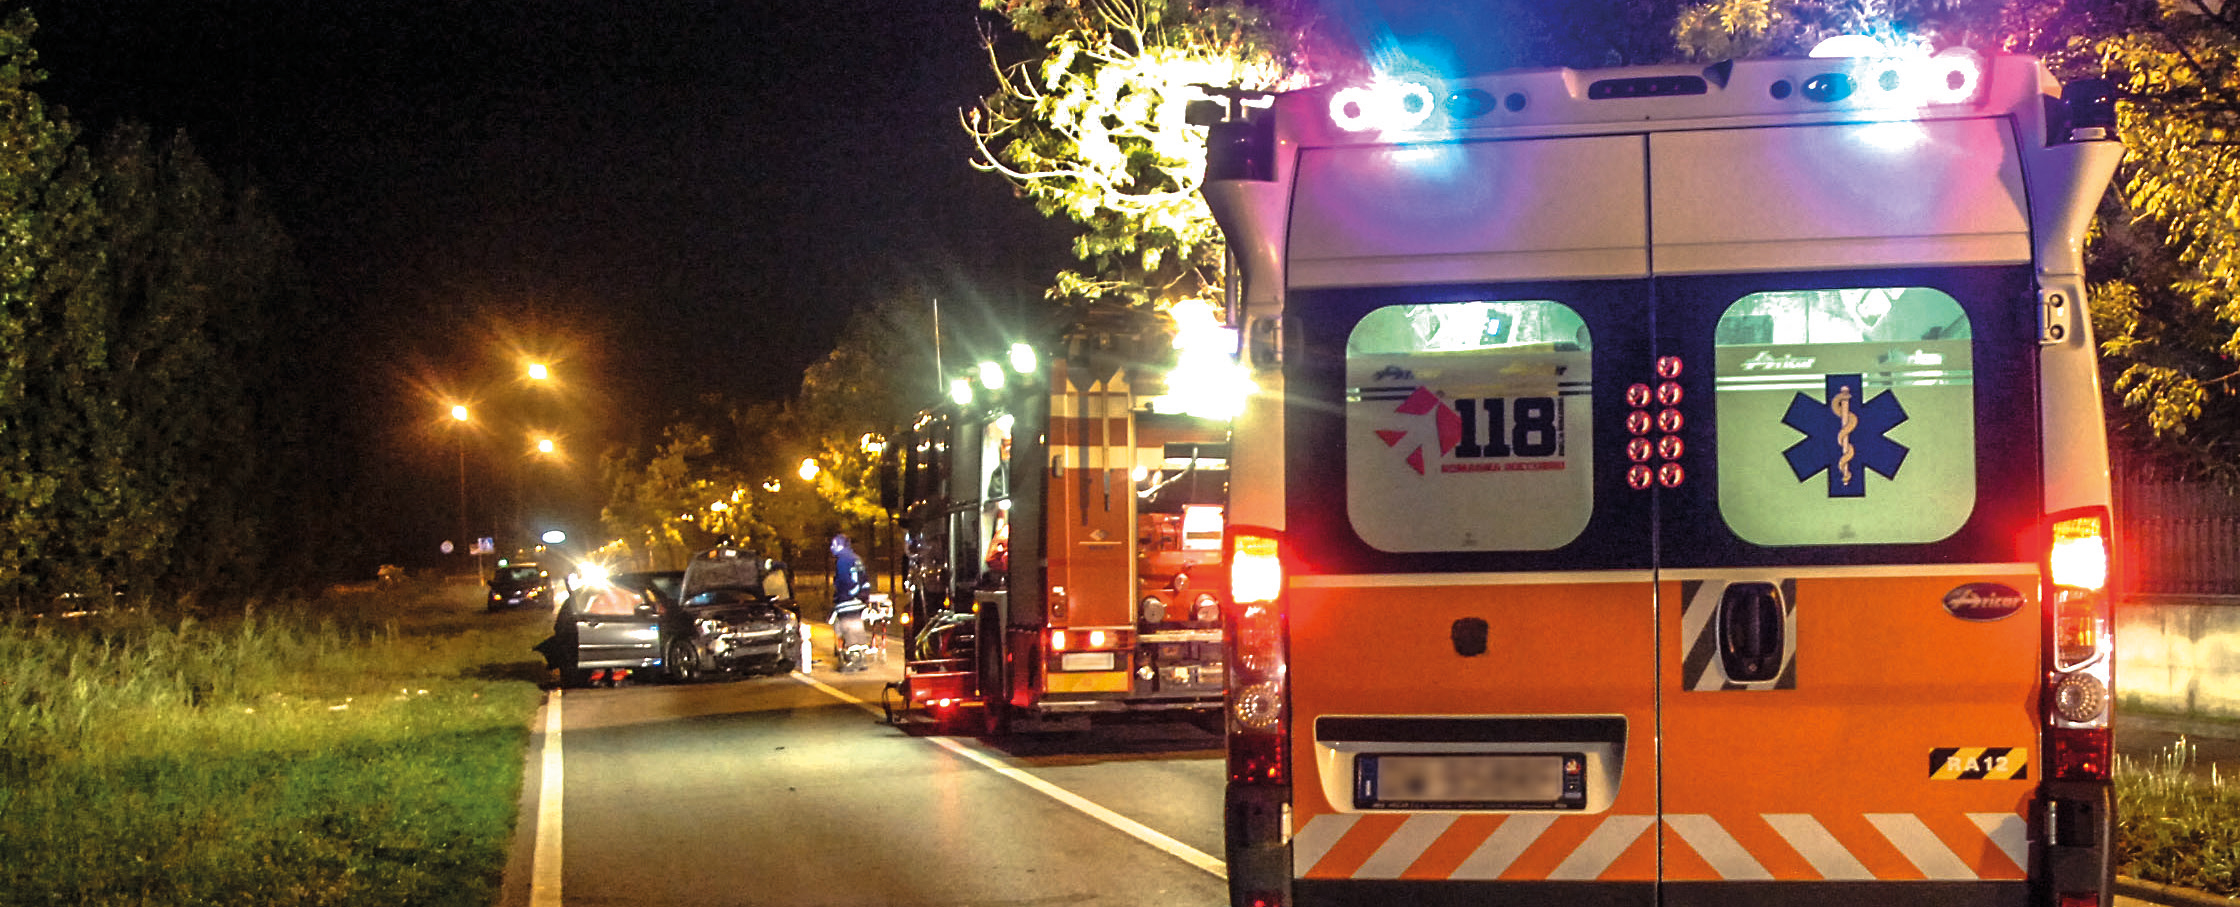 "La guida sicura in ambulanza" sconto speciale per i soci ASAPS | Emergency Live